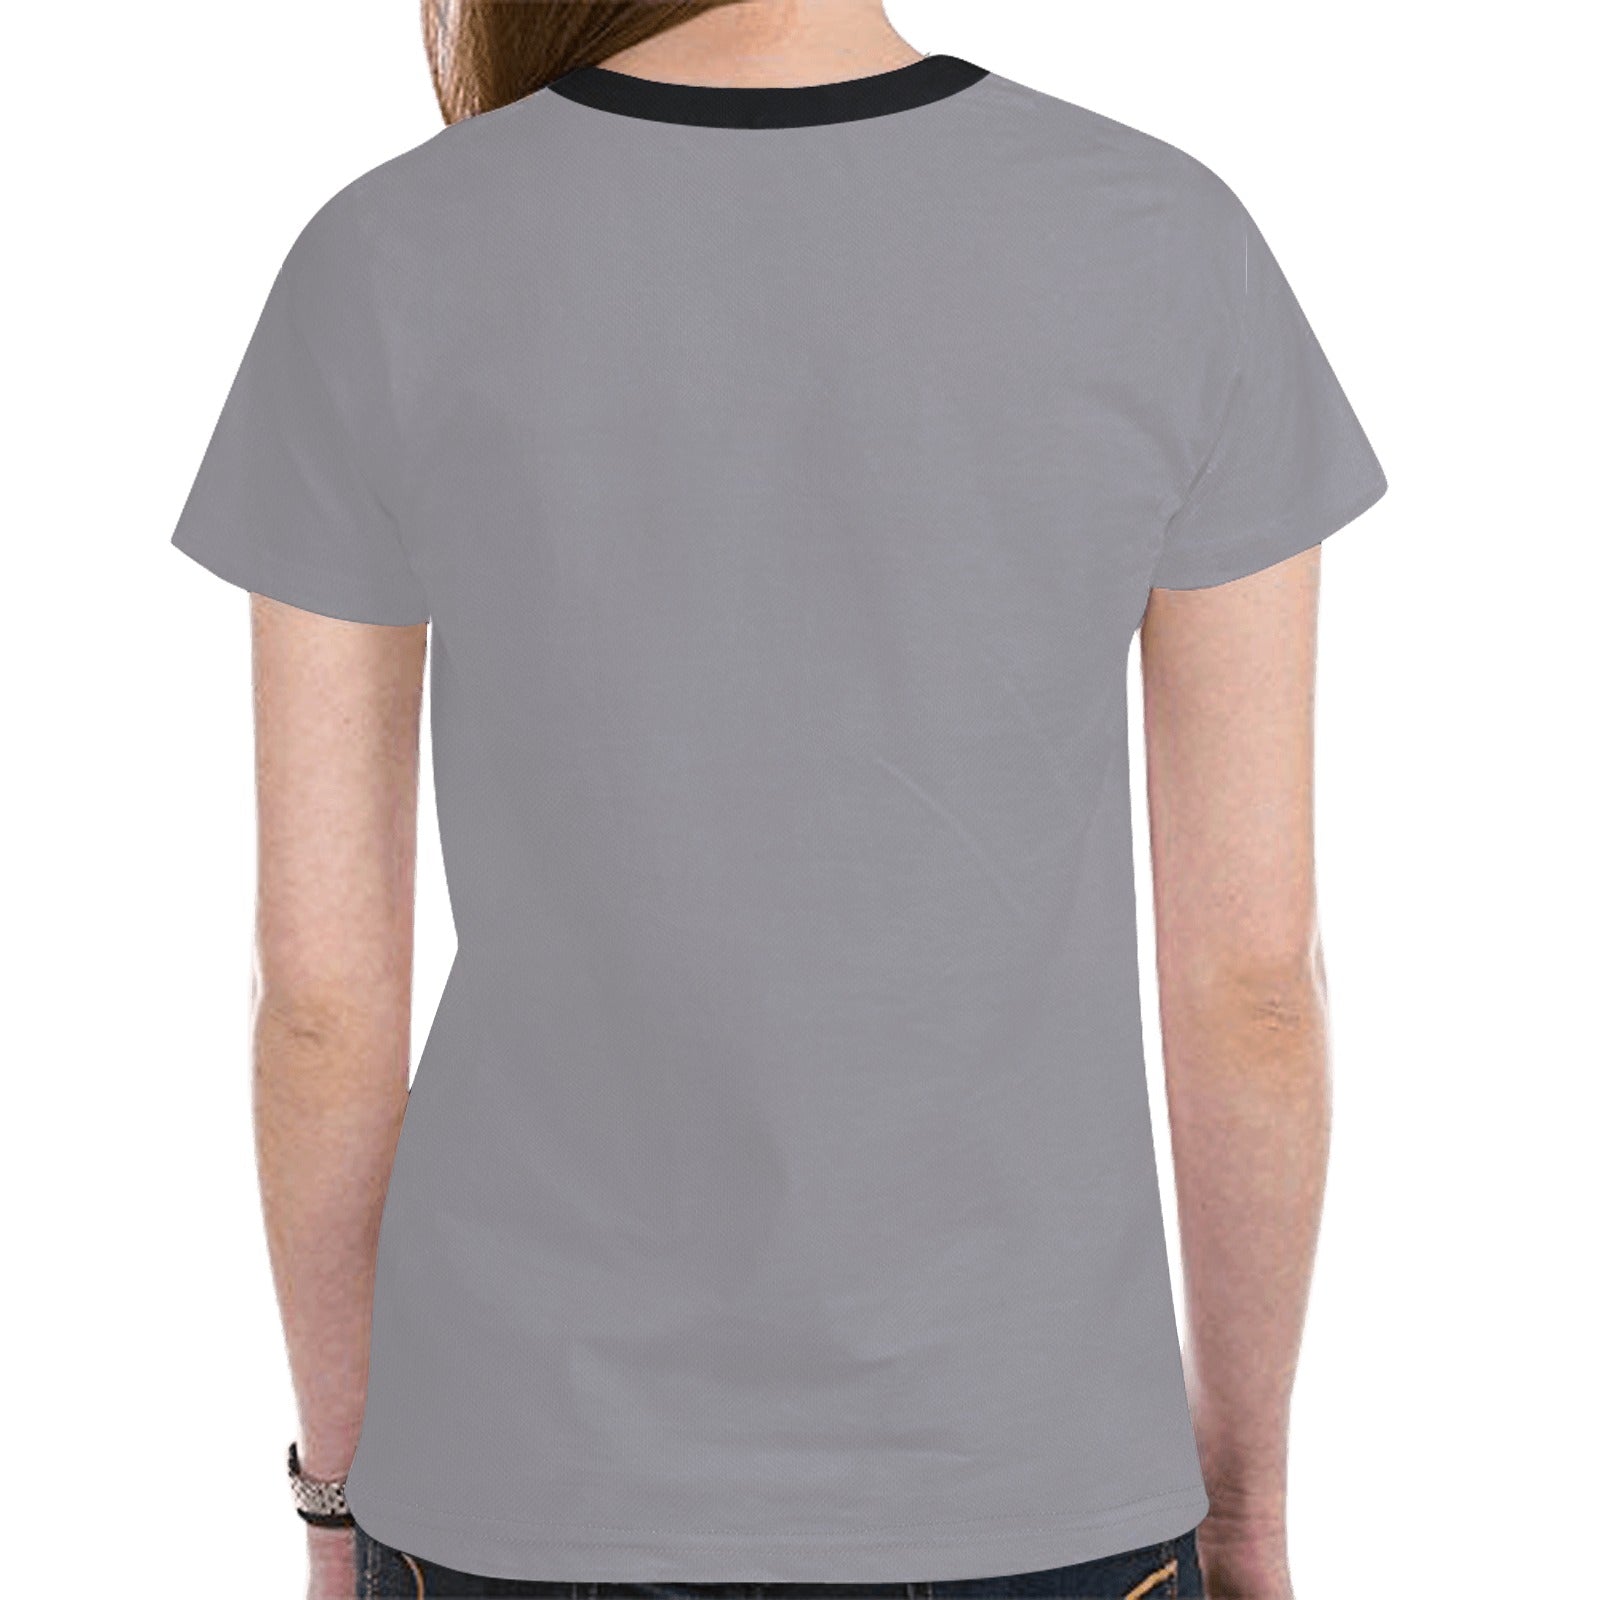 Floral Beaver Spirit Guide (Dark Gray) T-shirt for Women